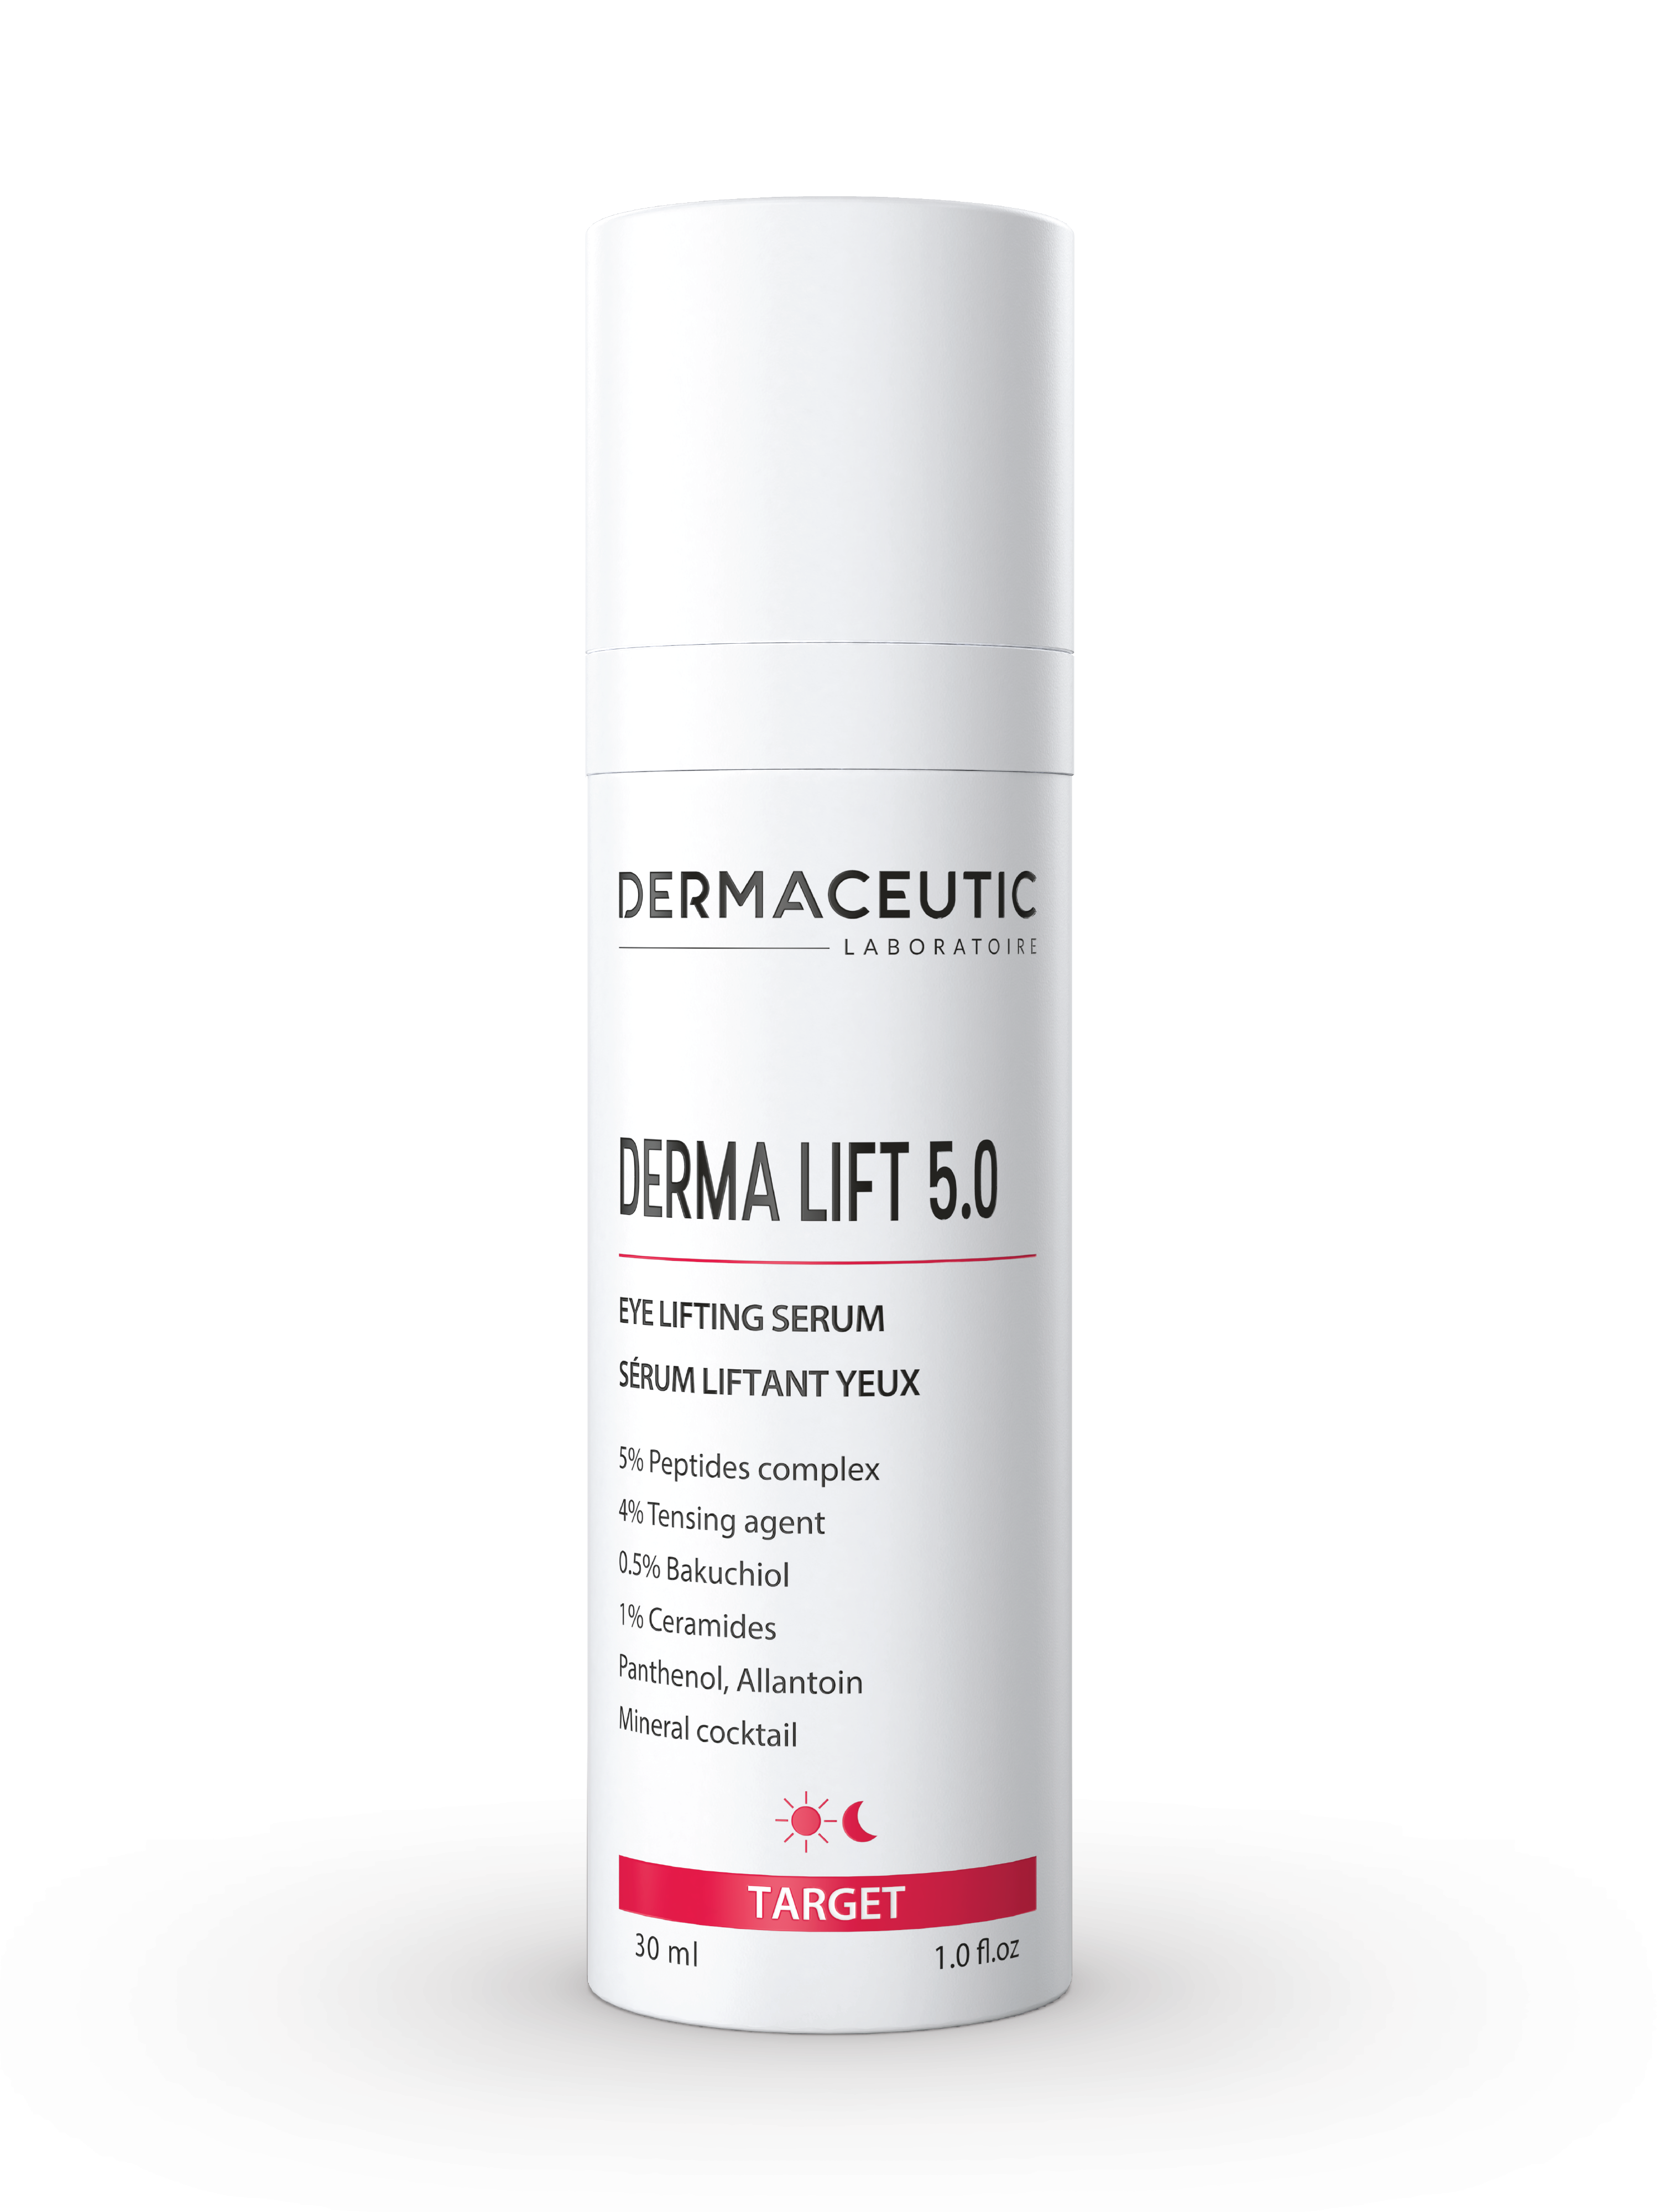 Dermaceutic Derma Lift 5.0 Eye Lifting Serum, 30 ml